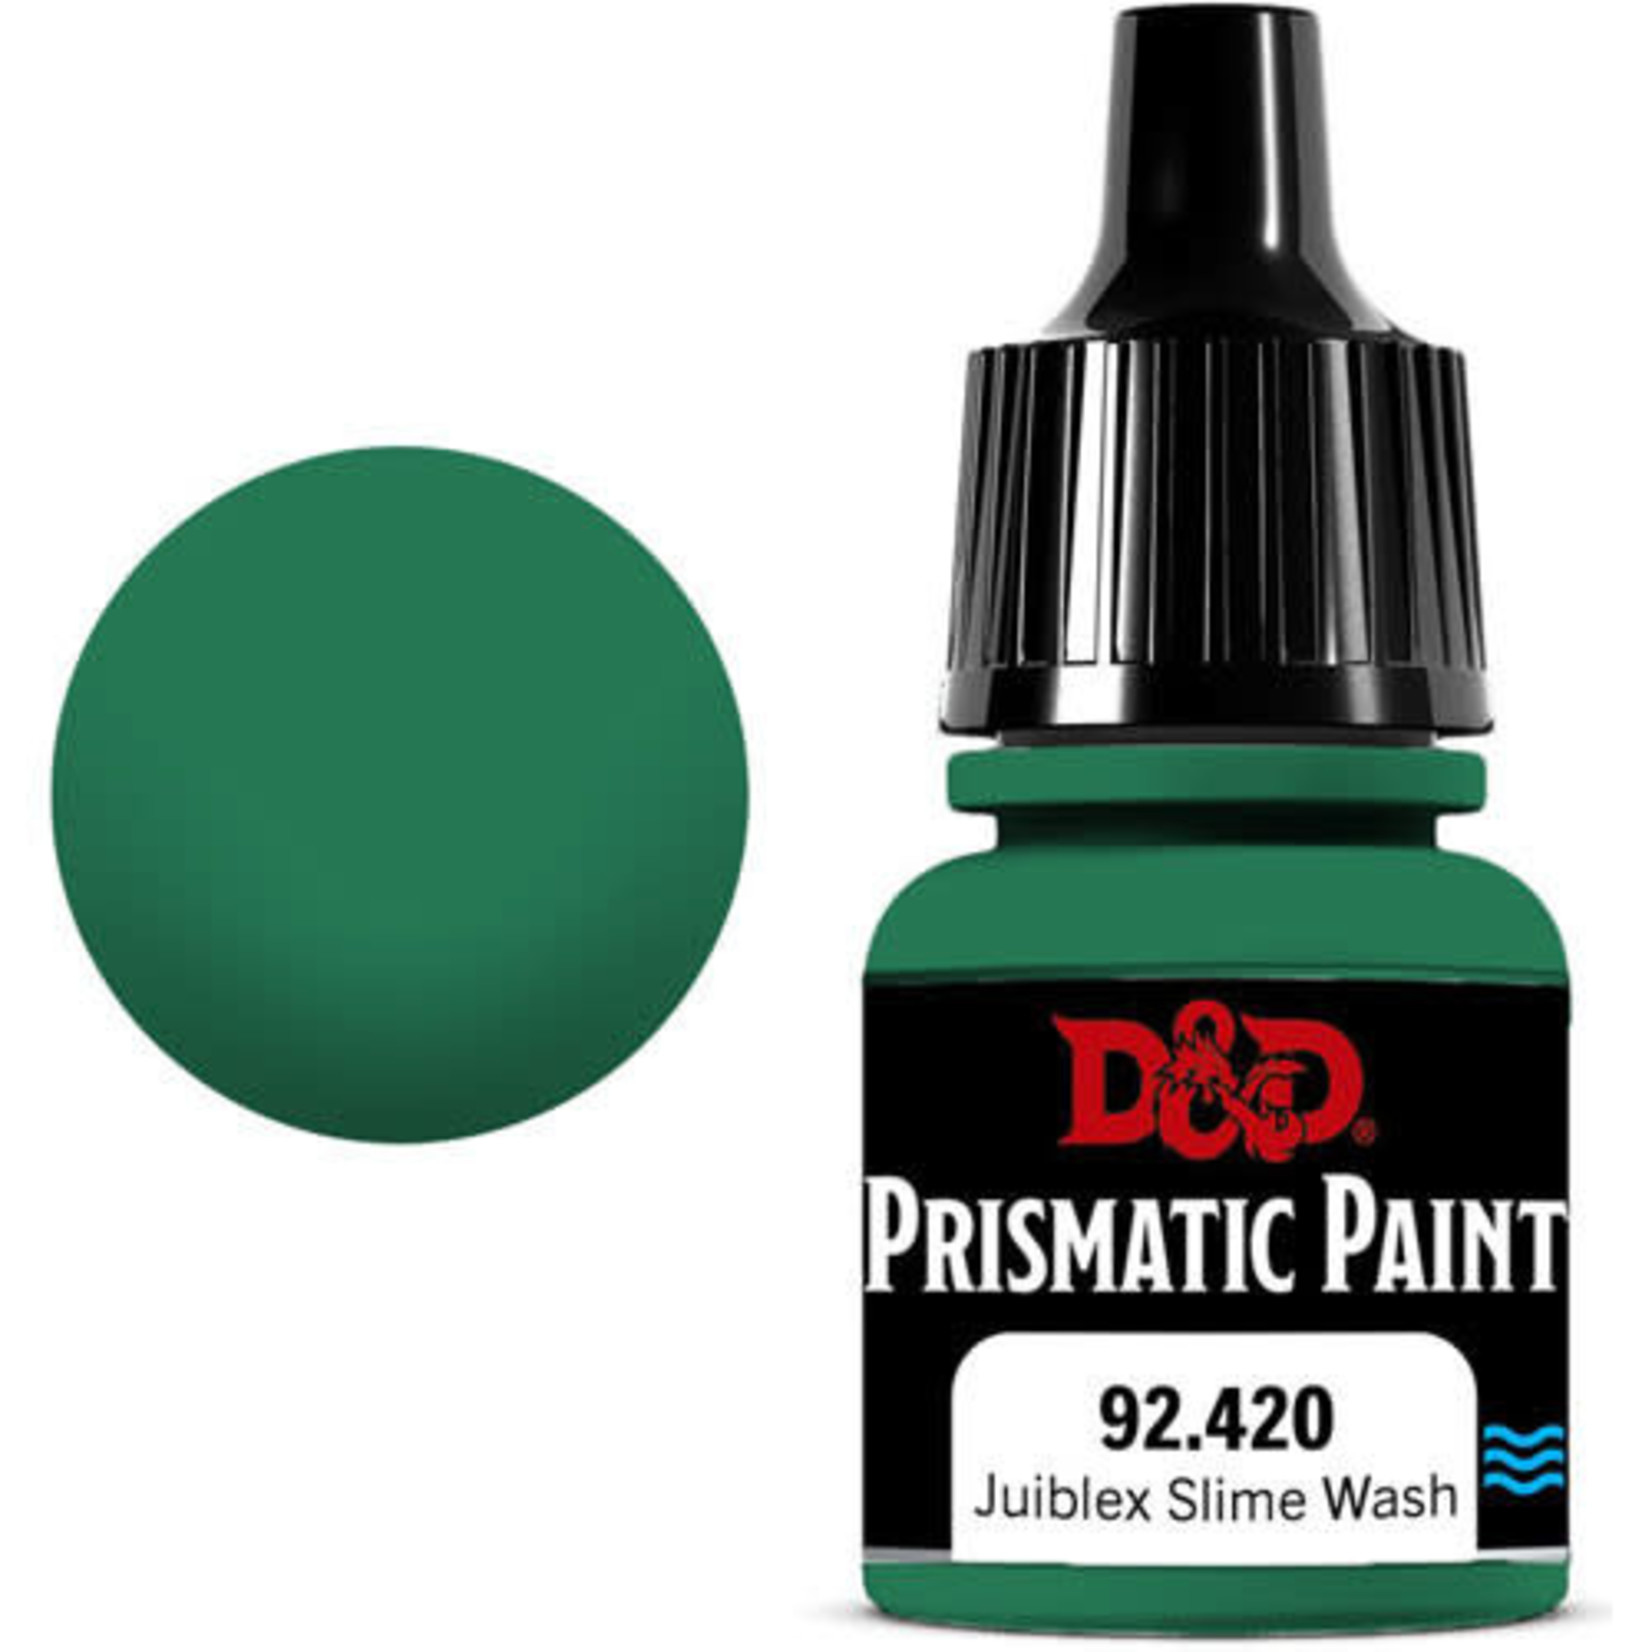 WIZKIDS/NECA D&D Prismatic Paint: Juiblex Slime Wash 92.420